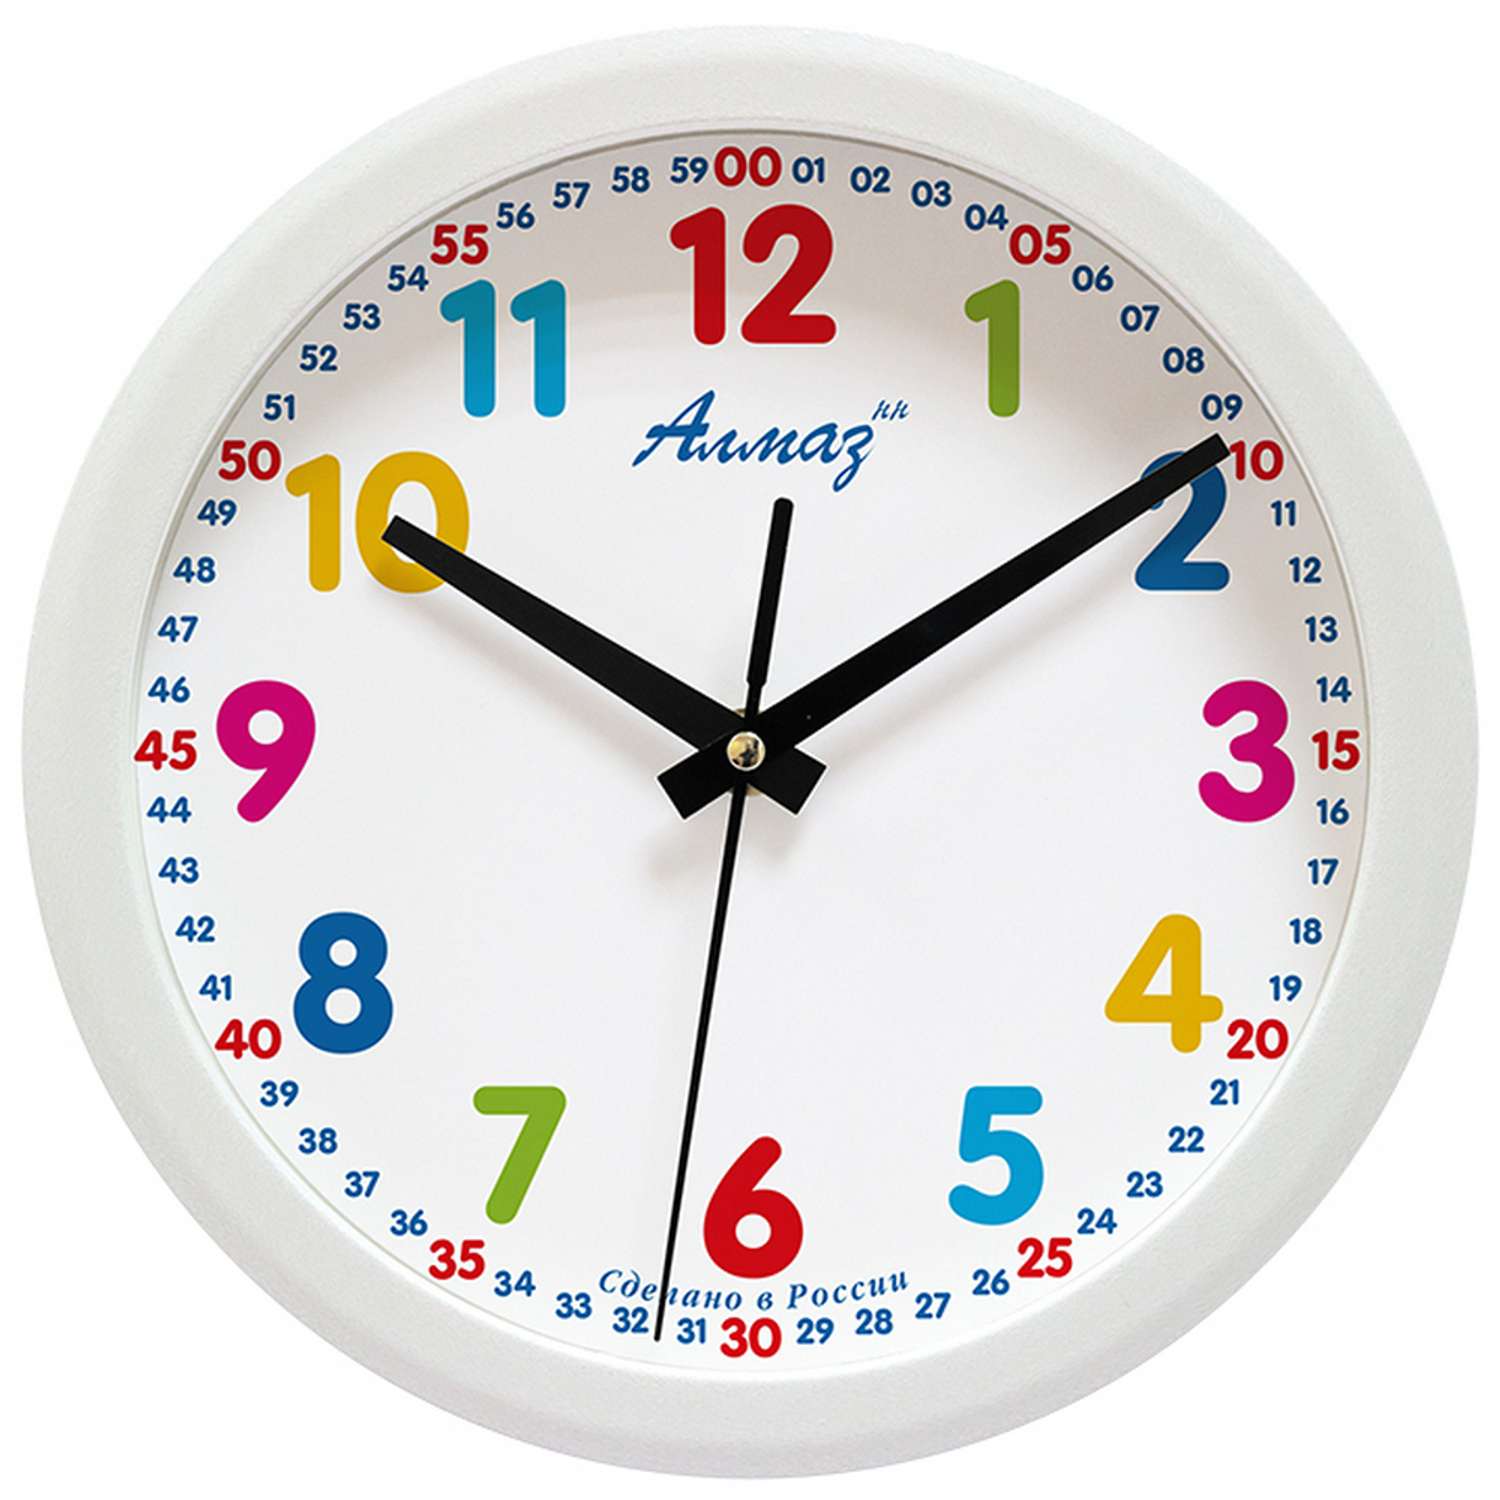 Циферблат часов для обучения. Часы настенные кварцевые Алмаз e49. Настенные часы для детей обучающие. Часы с минутами для детей. Часы циферблат.